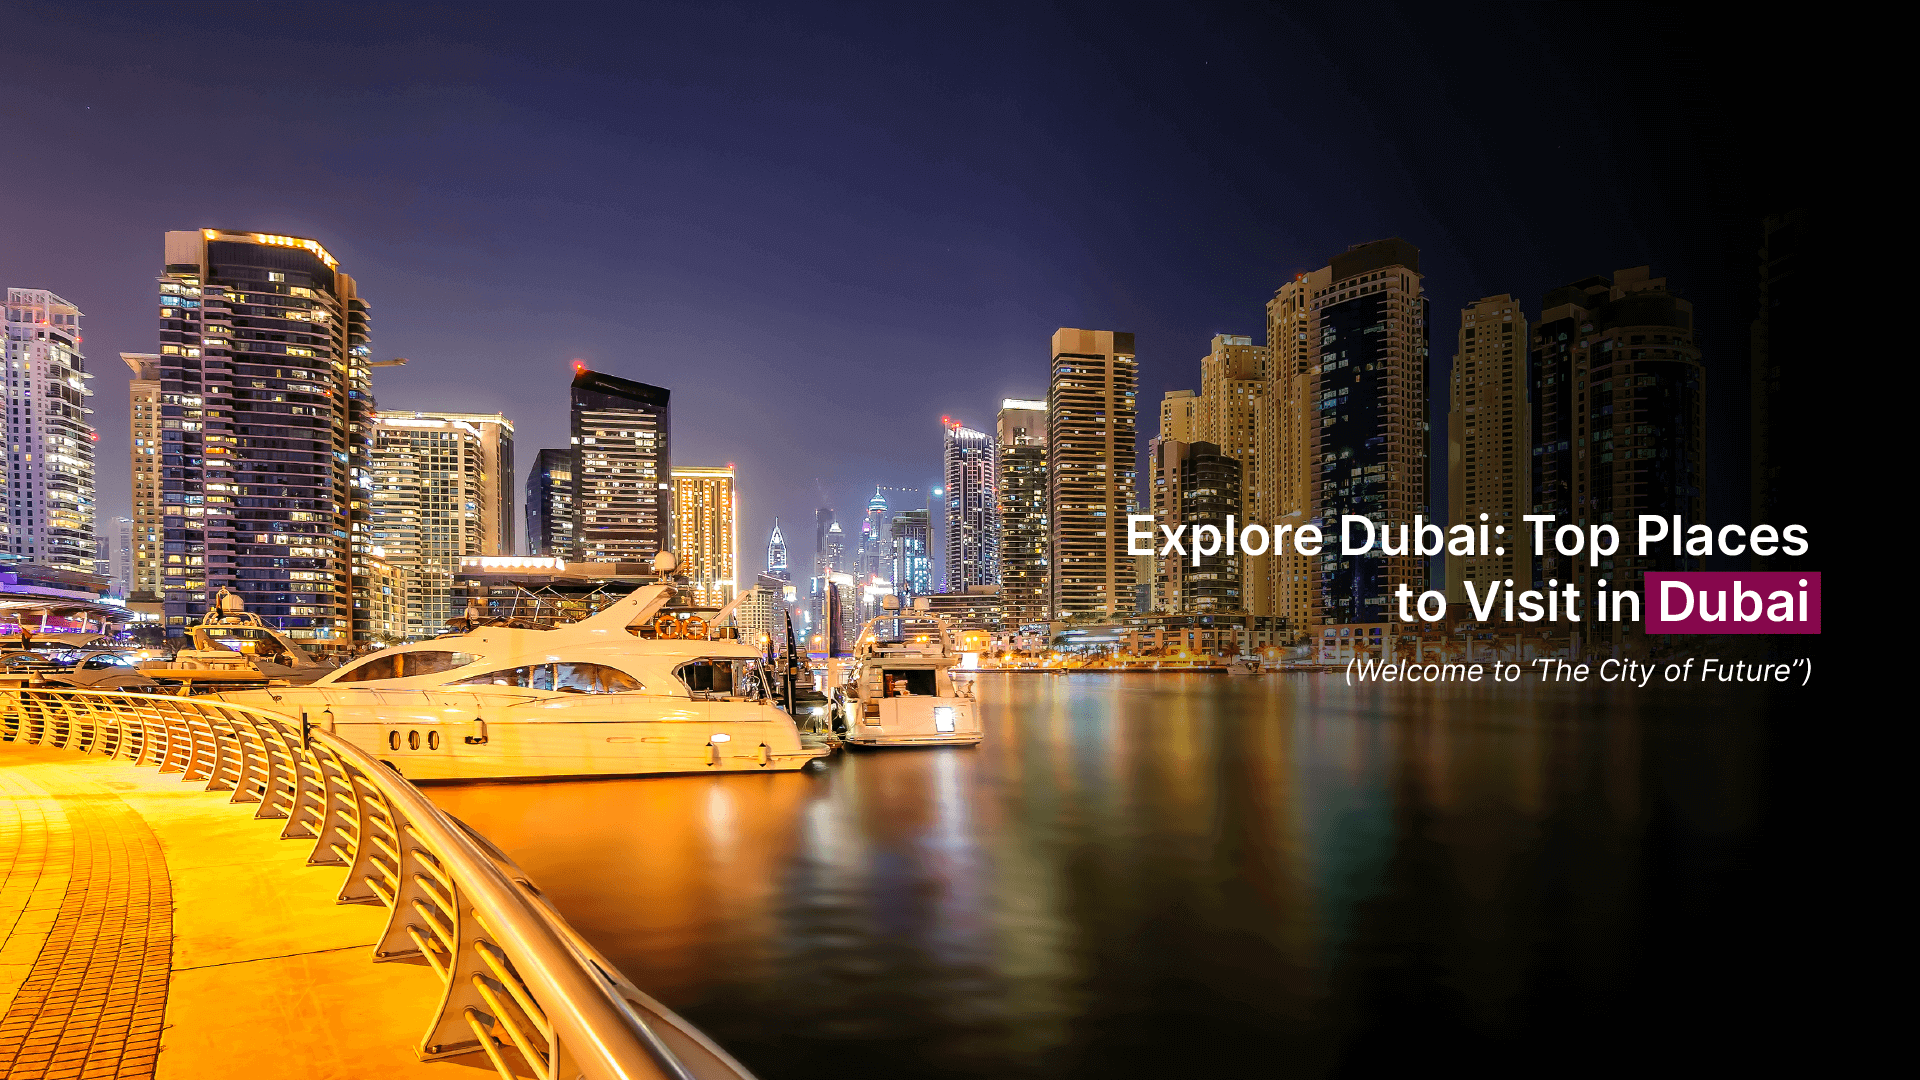 Explore Dubai: Top Places to Visit in Dubai